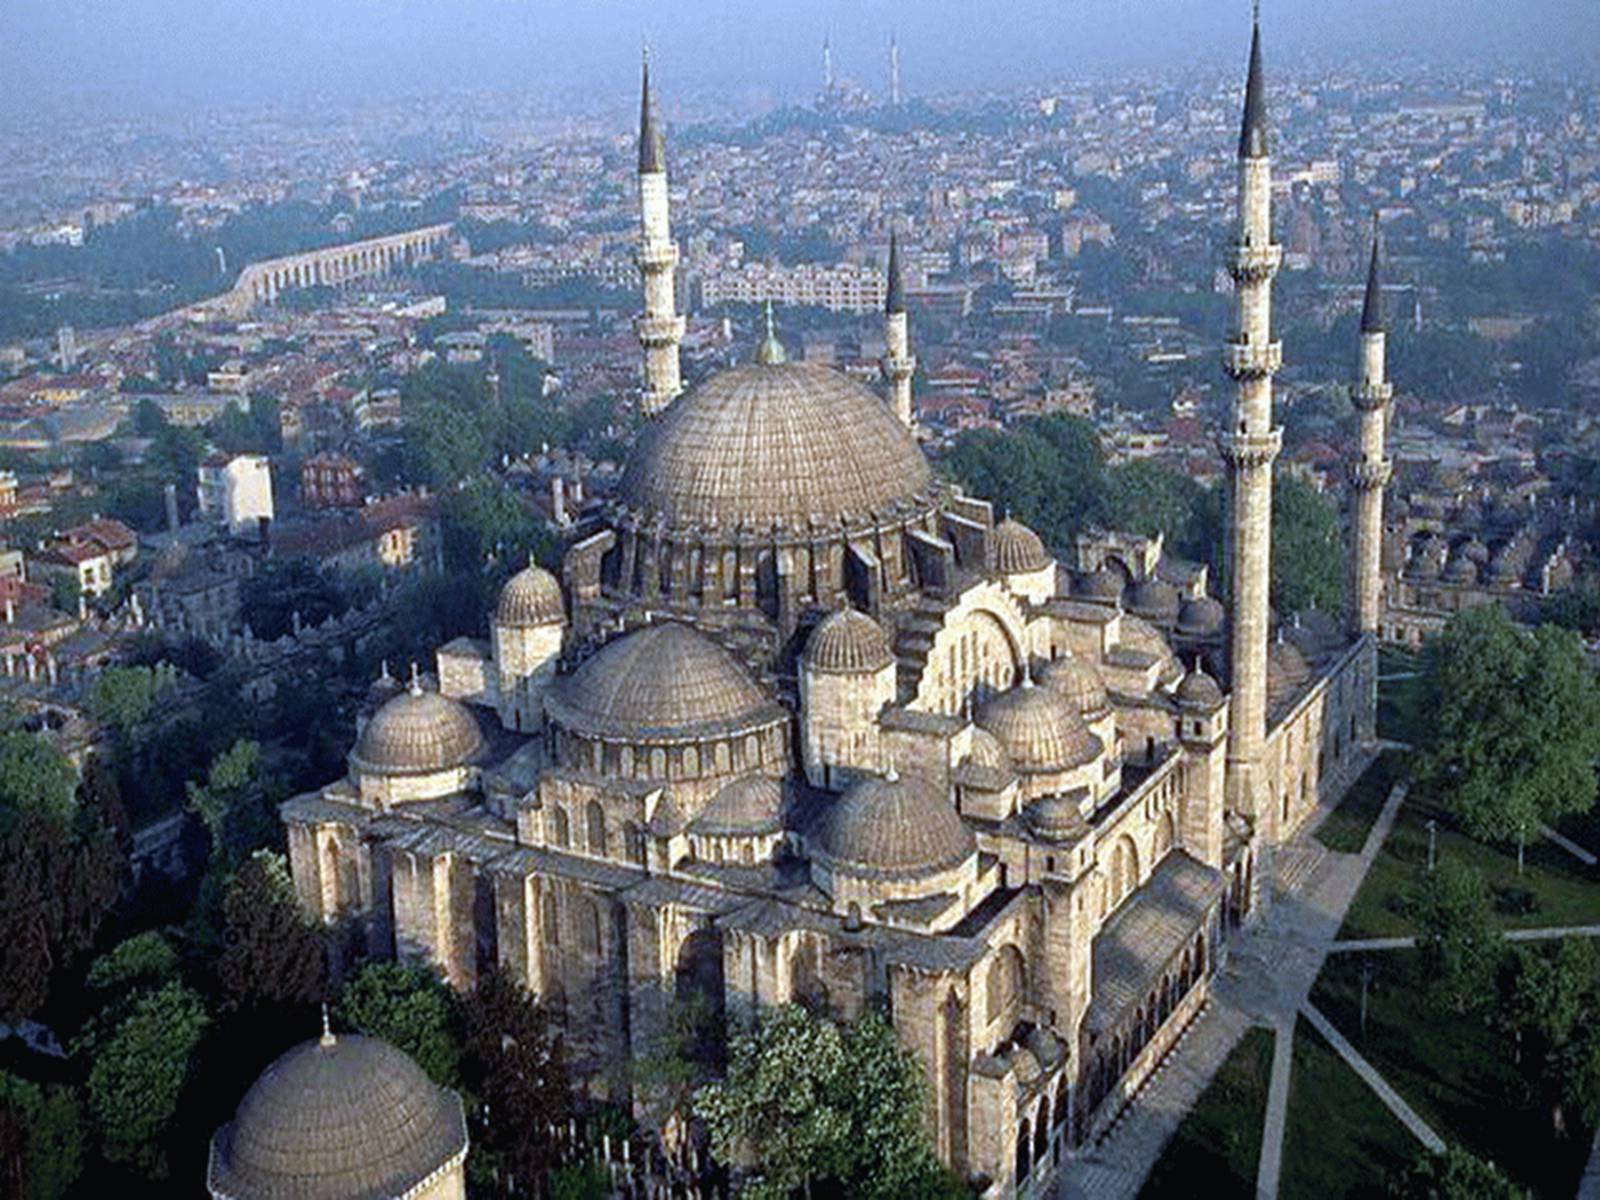 фото мечети султана сулеймана в турции